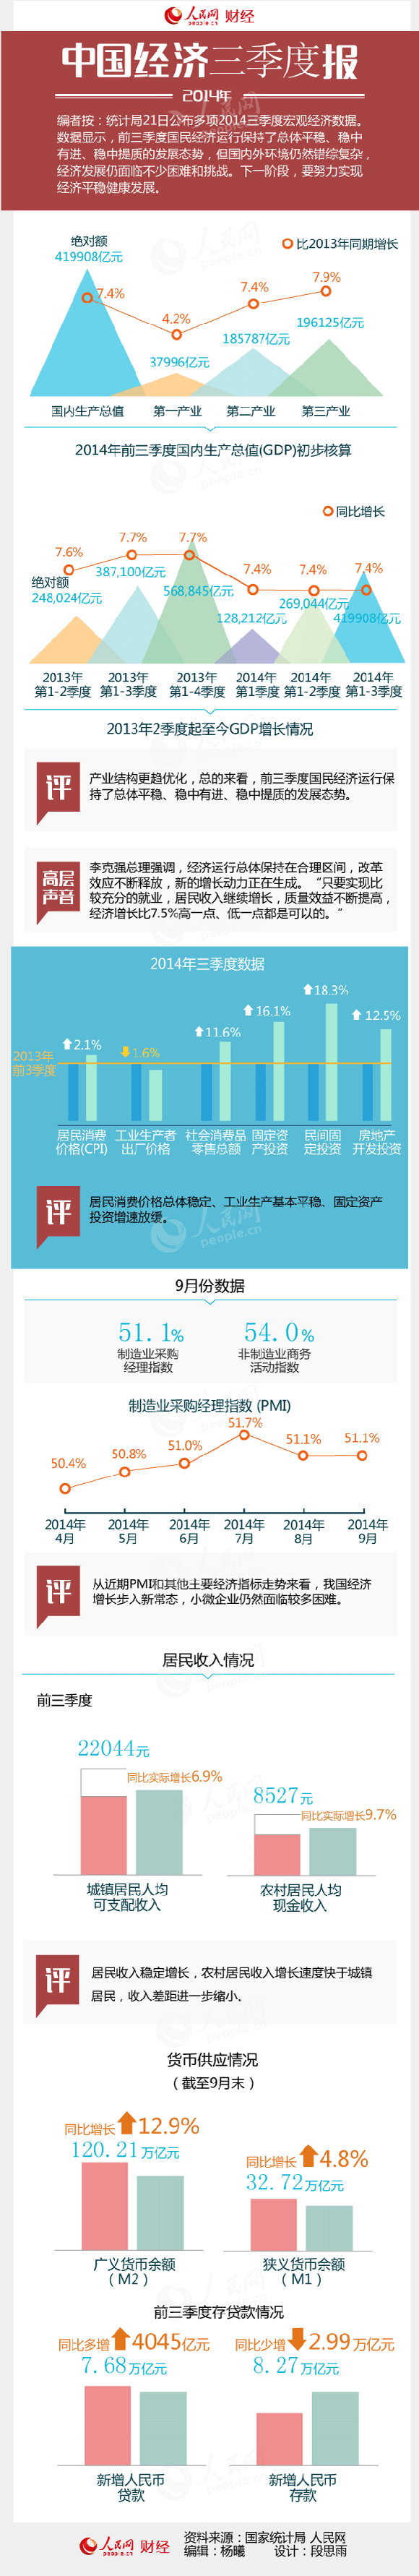 一張圖讀懂三季度中國宏觀經濟數據。